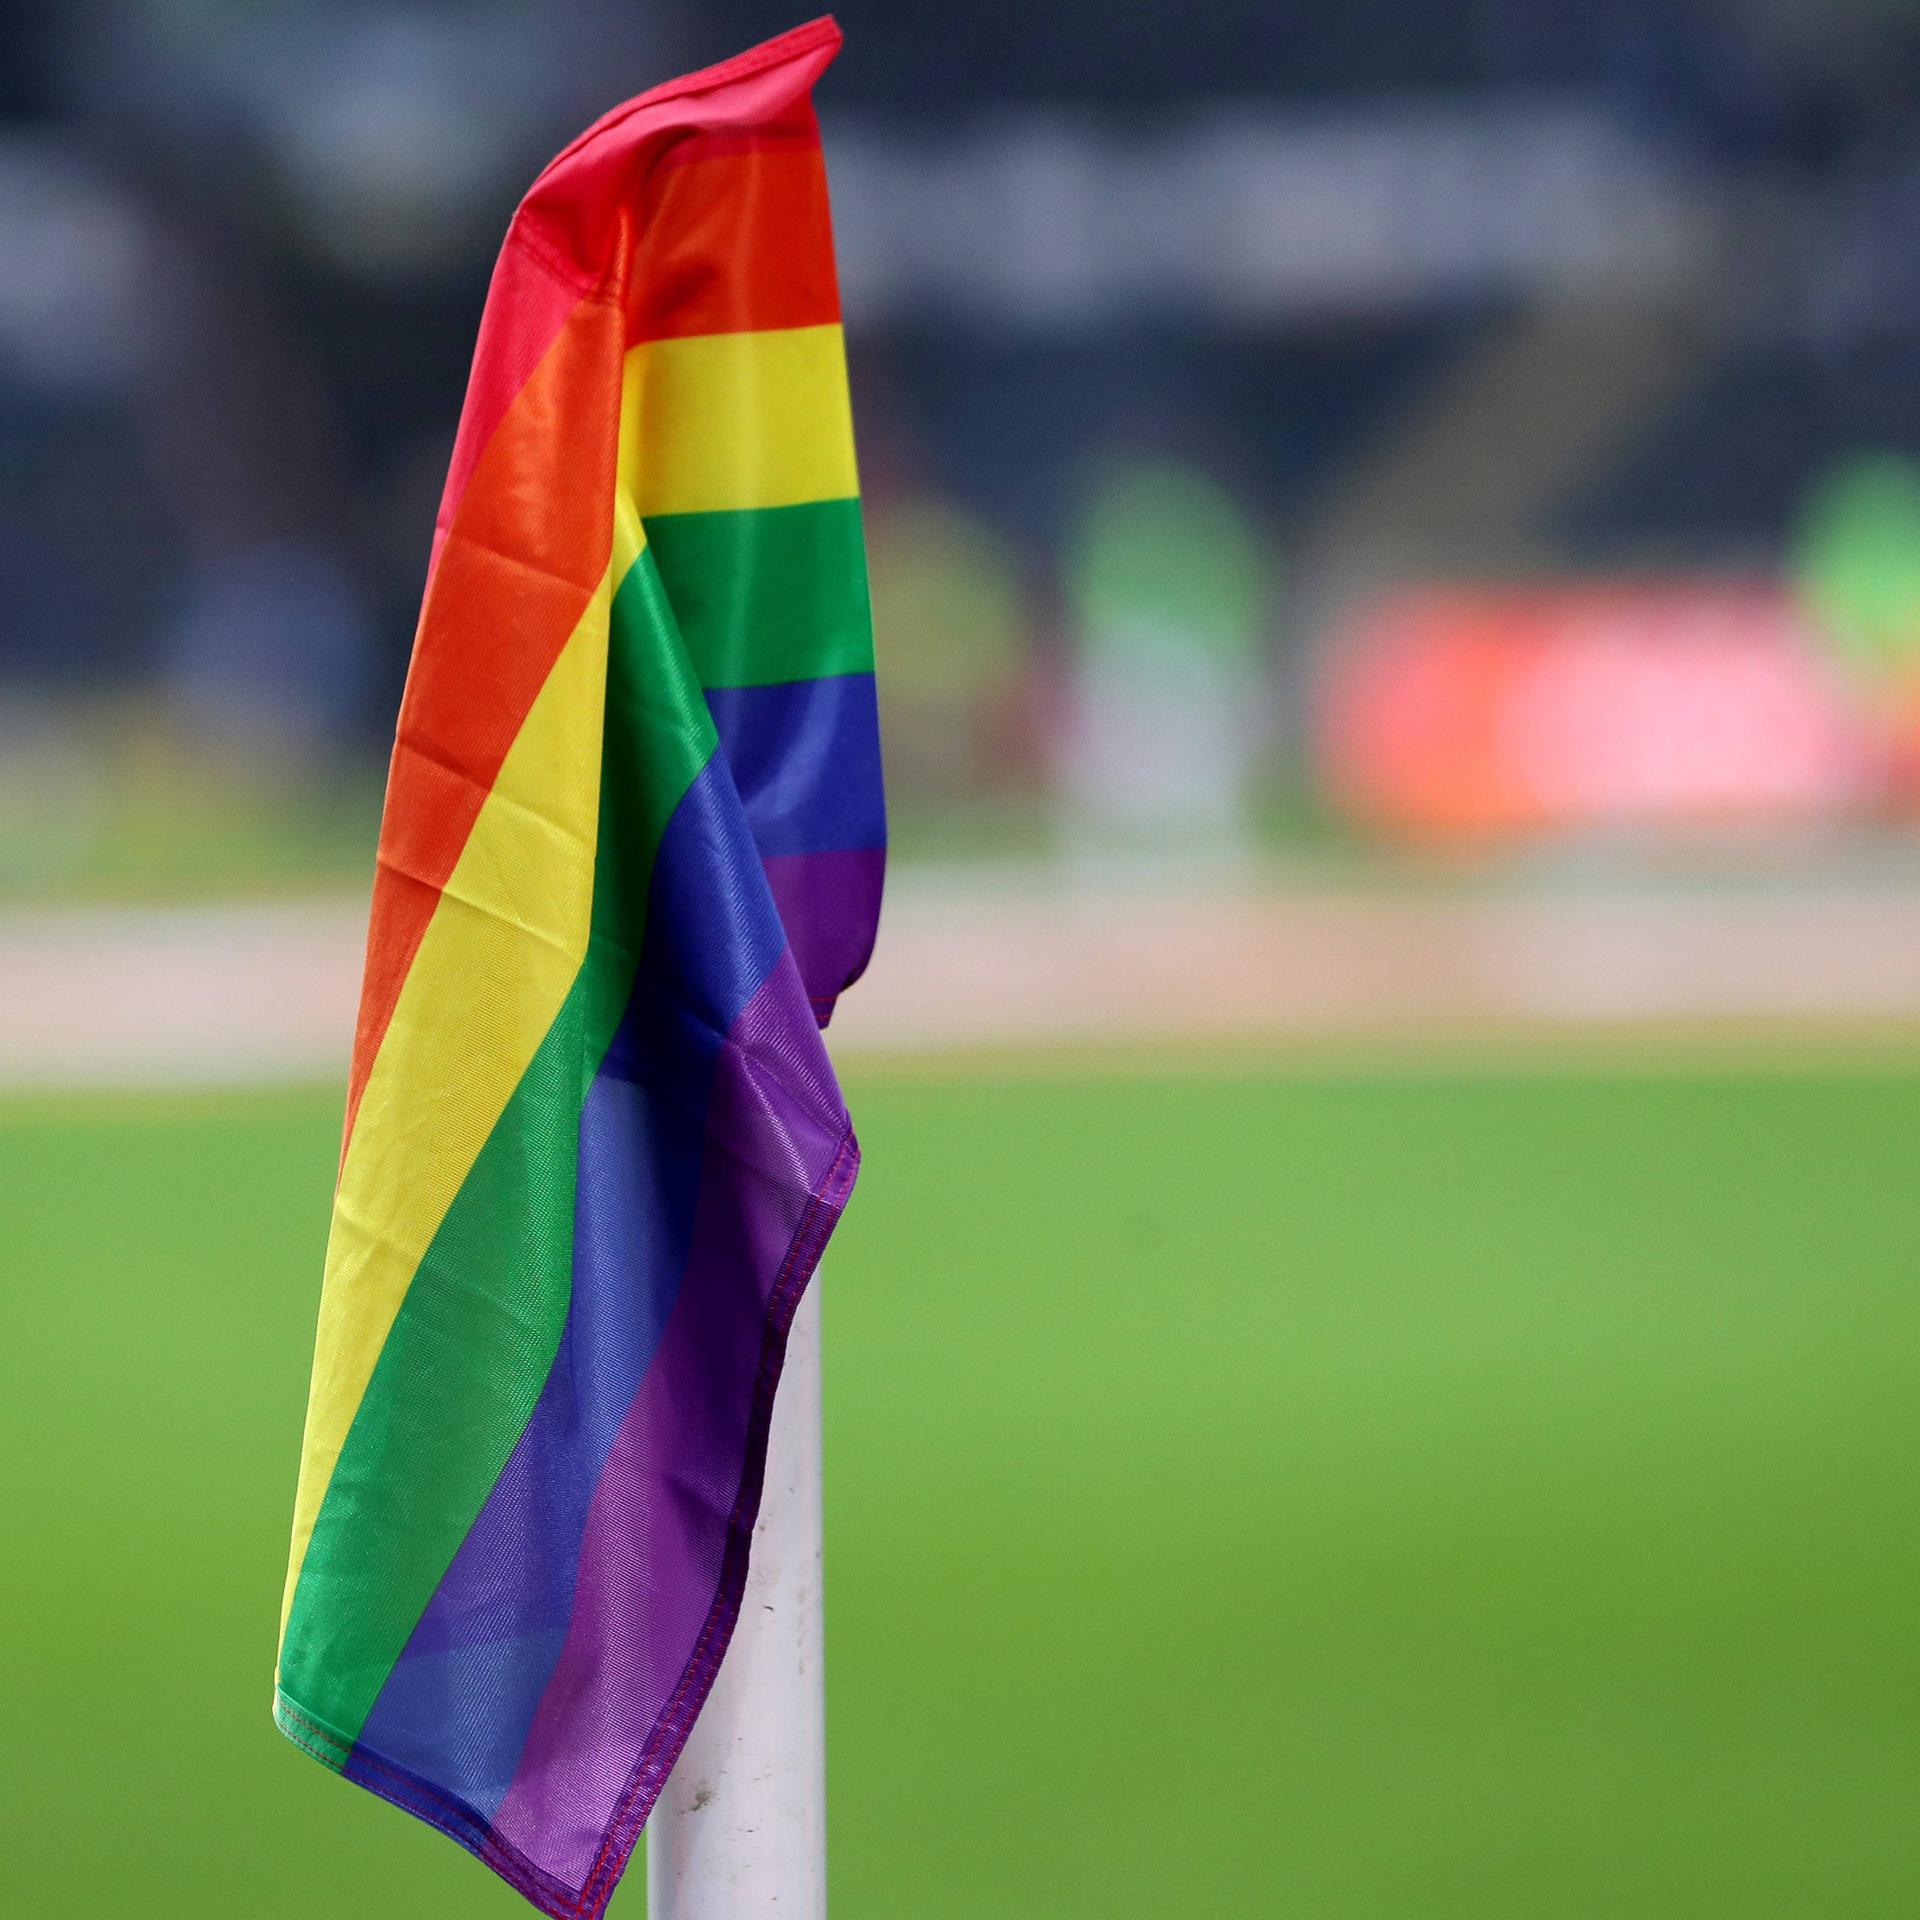 Eine Regenbogenfahne als Eckfahne in einem Fußballstadion.